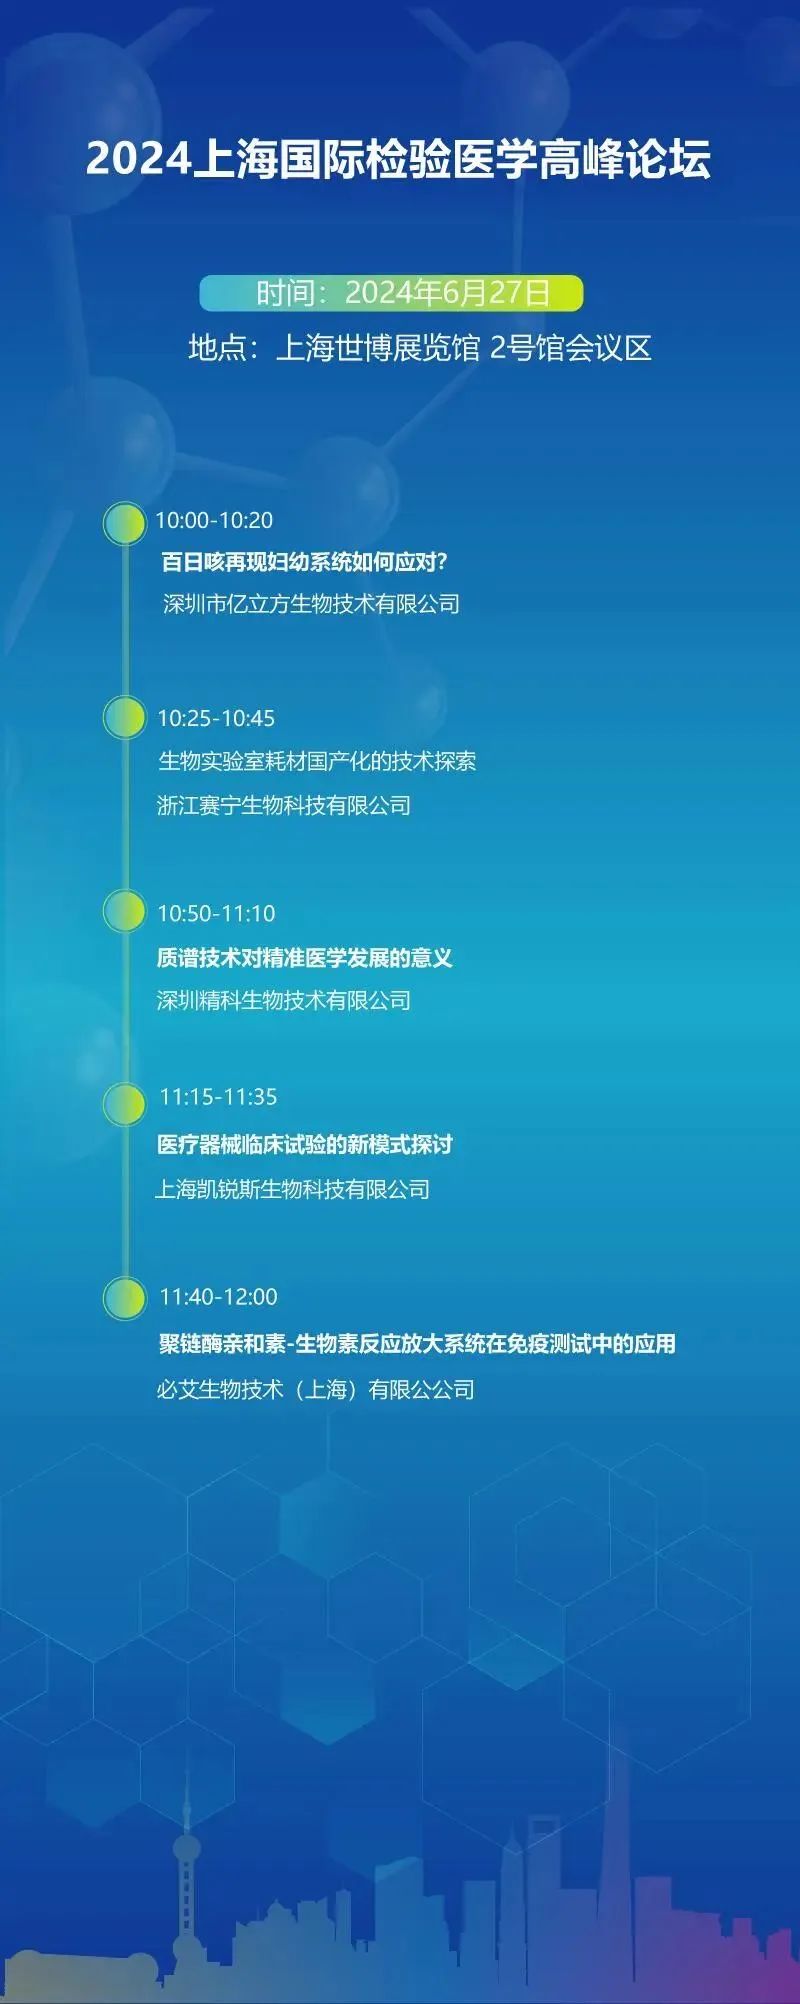 2024上海国际检验医学及体外诊断试剂展览会会议日程